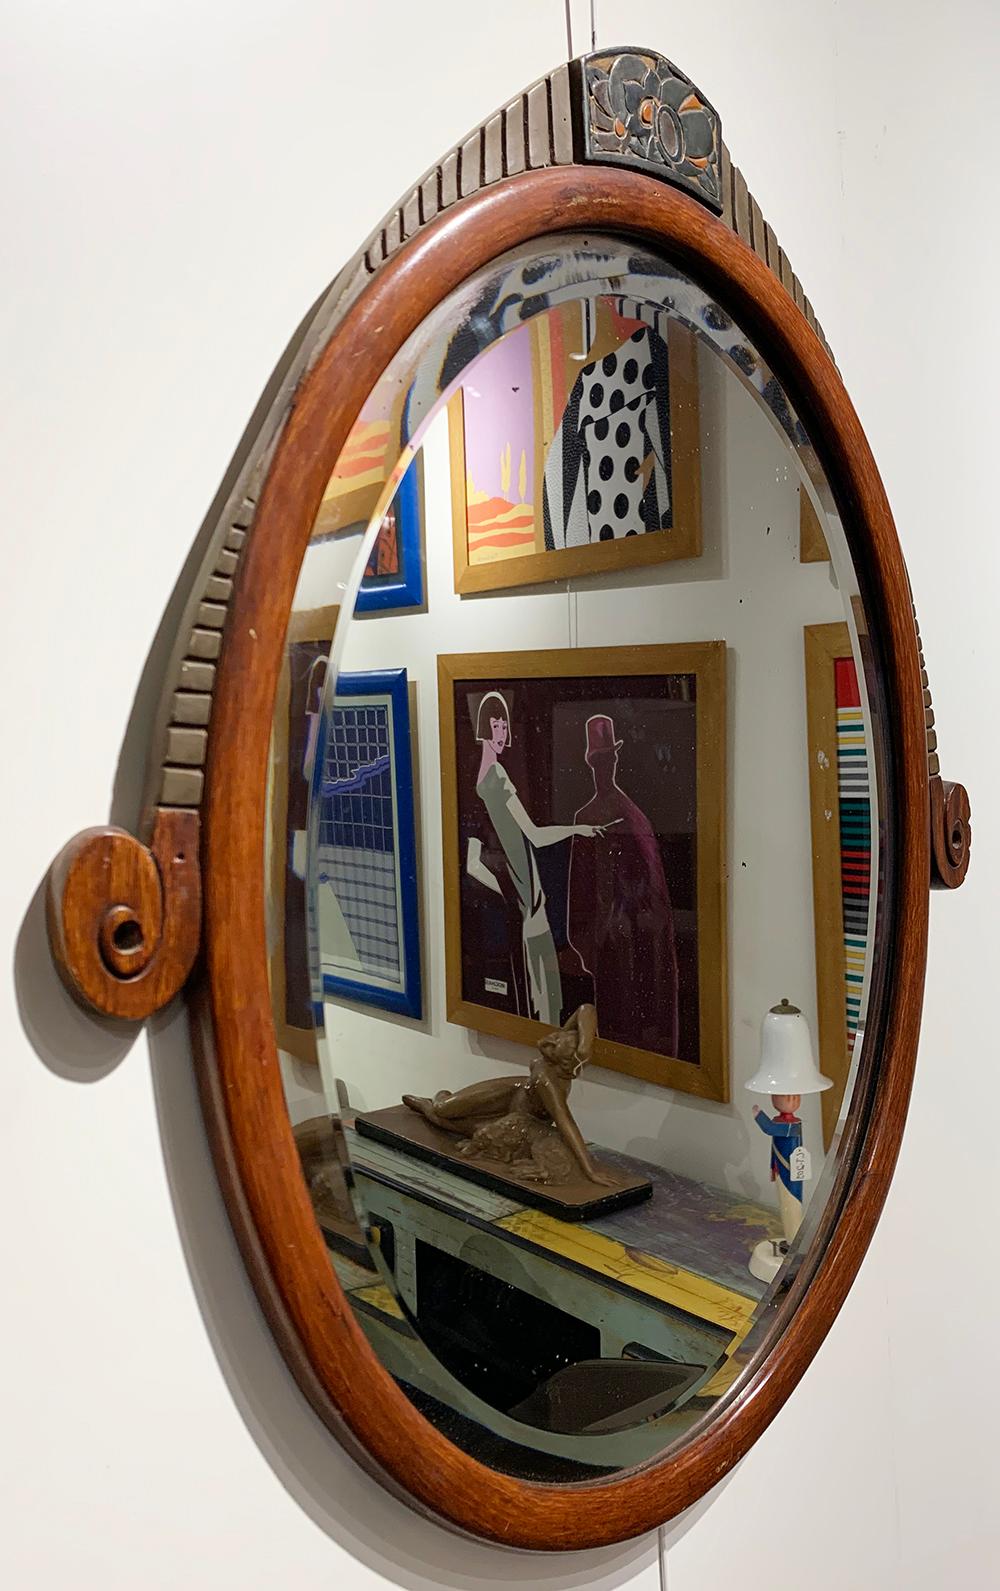 Eleganter französischer Art-Déco-Wandspiegel aus der Mitte des 20. Jahrhunderts. 
Der länglich-ovale Spiegel hat einen abgeschrägten Rand und befindet sich in einem Holzrahmen, der mit stilisierten Blumenmotiven verziert ist. Der Spiegel ist